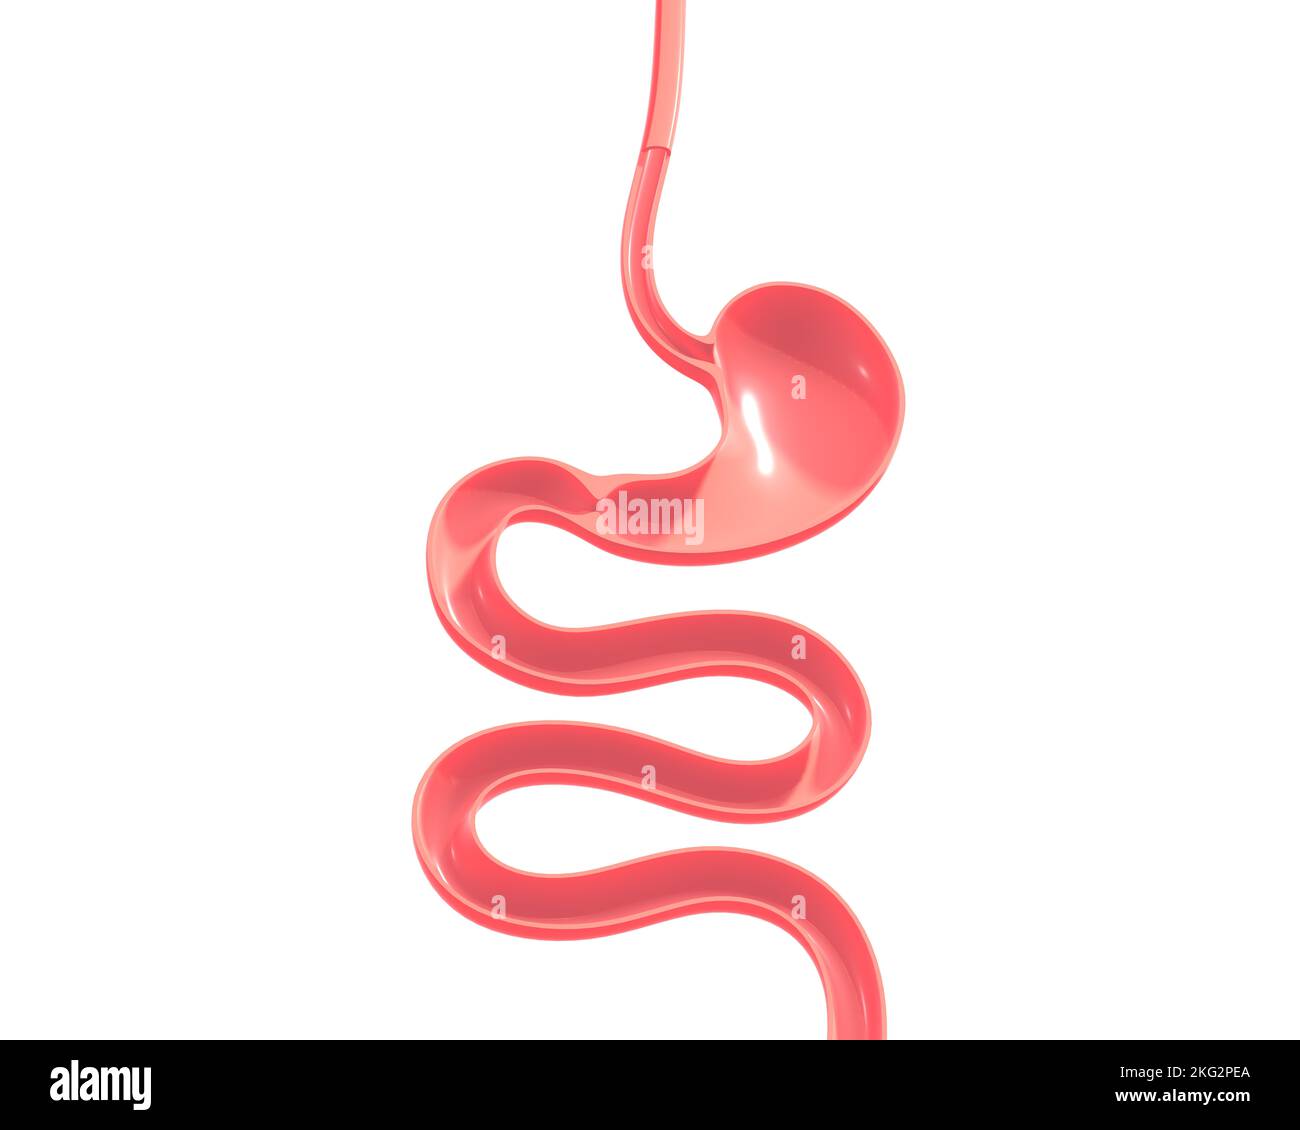 3d illustrazione del sistema digestivo umano. Dall'esofago all'intestino tenue, mostrando l'interno anatomico. Foto Stock